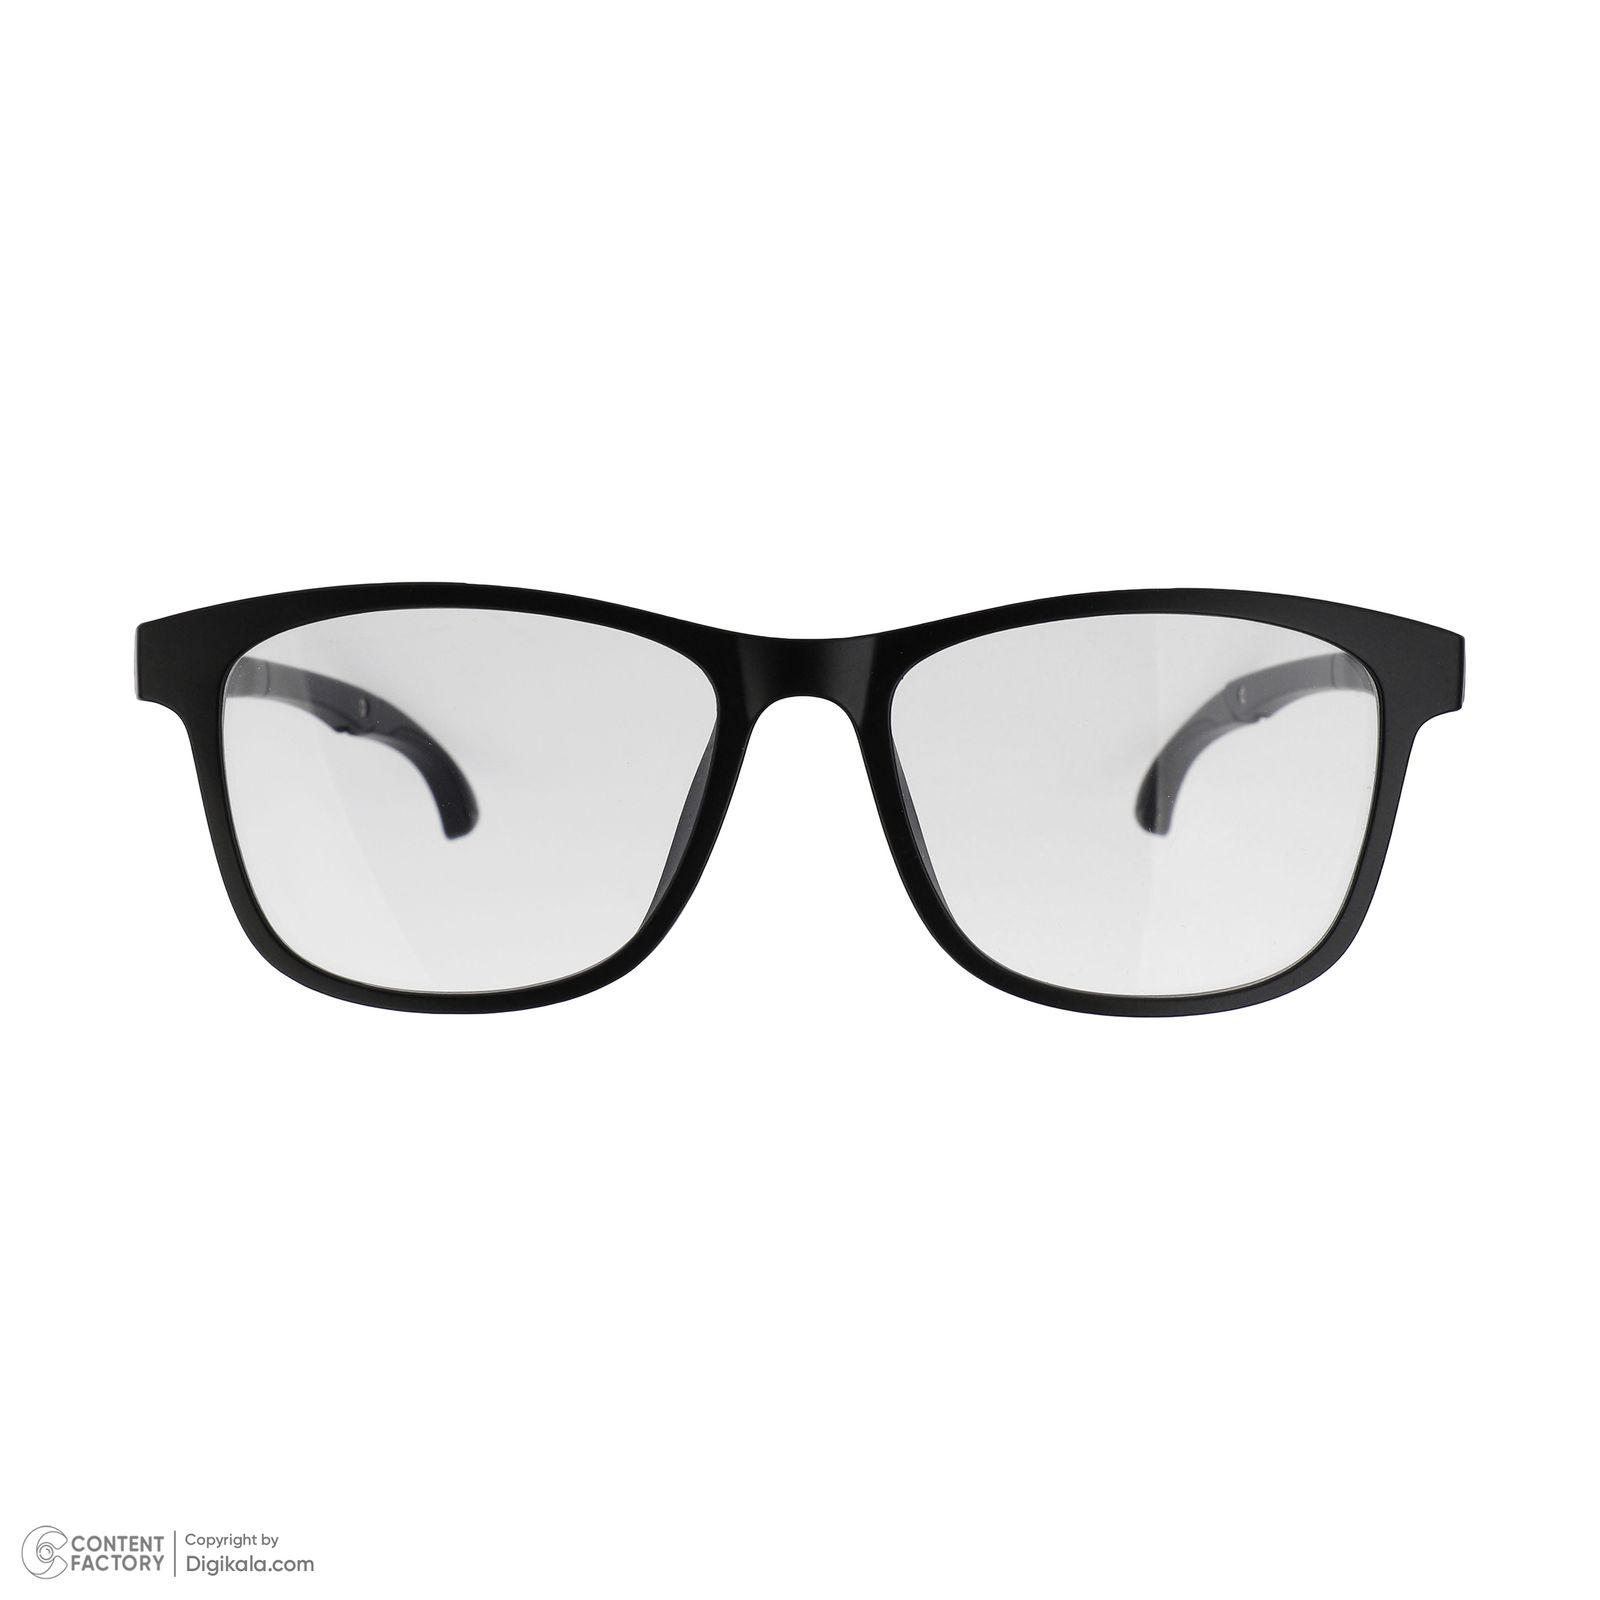 فریم عینک طبی دونیک مدل tr2515-c2 به همراه کاور آفتابی مجموعه 6 عددی -  - 2